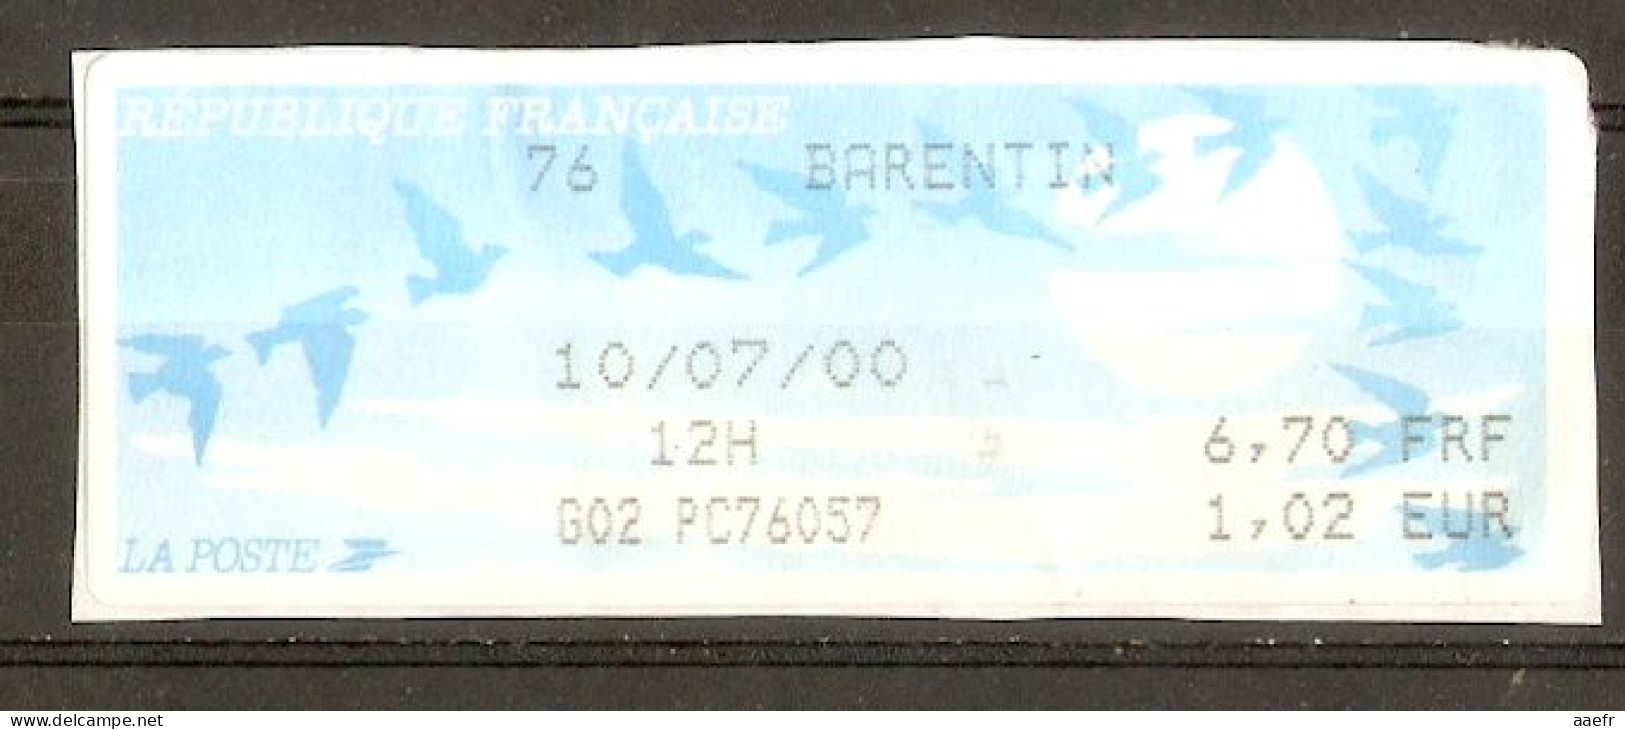 France - 2000 - Vignette ATM Type Oiseaux De Joubert - Barentin - Montant En FF Et € - 1990 « Oiseaux De Jubert »